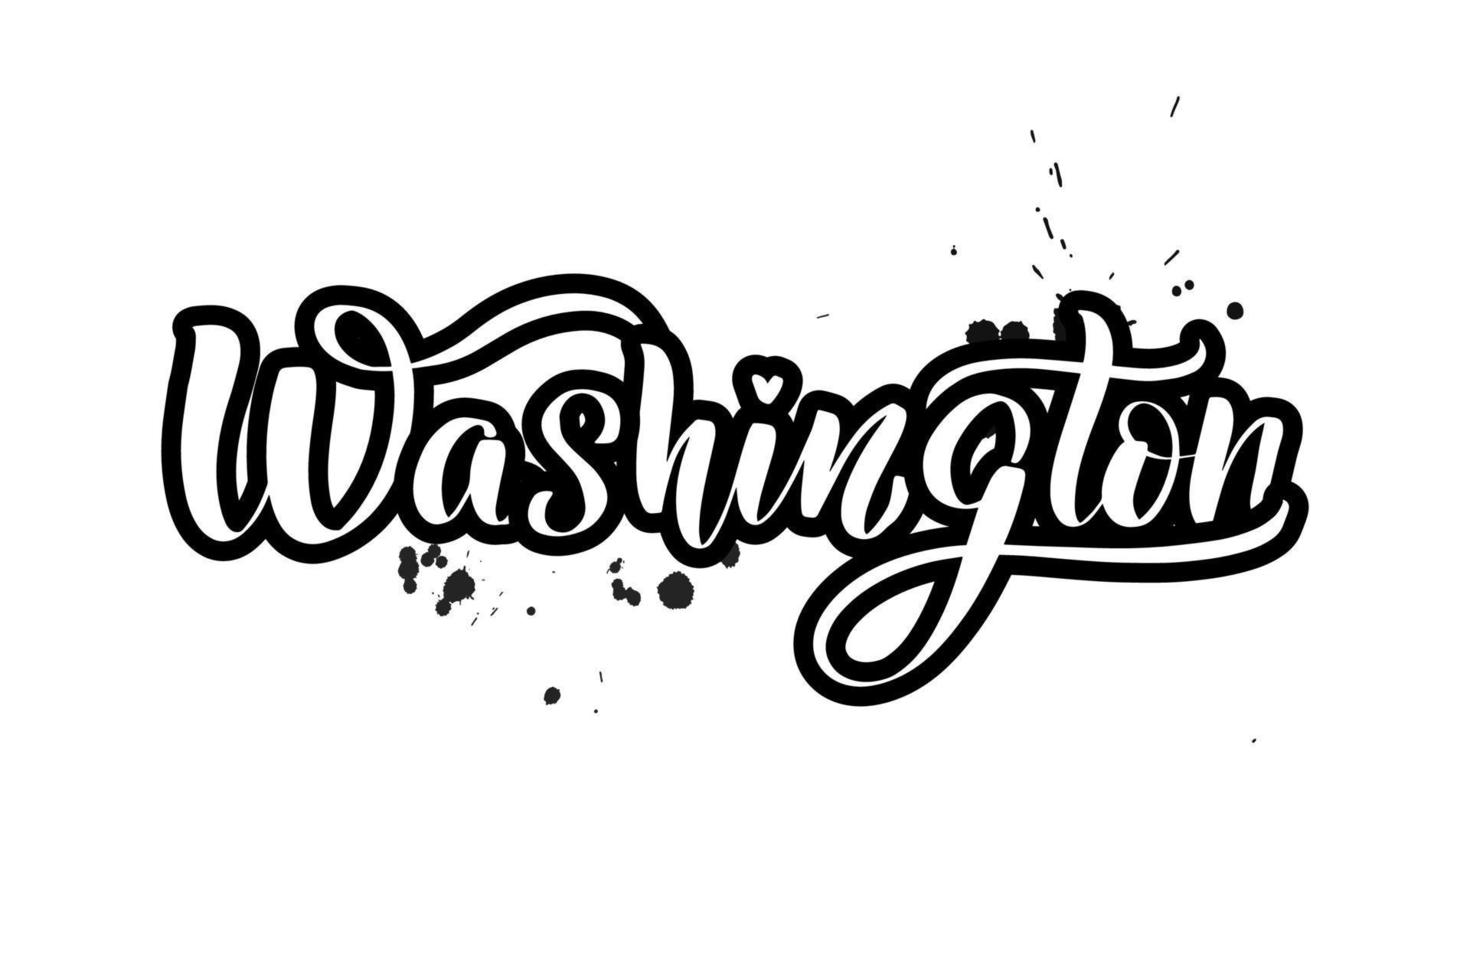 lettrage au pinceau manuscrit inspirant washington. illustration de calligraphie vectorielle isolée sur fond blanc. typographie pour bannières, badges, cartes postales, t-shirts, impressions, affiches. vecteur